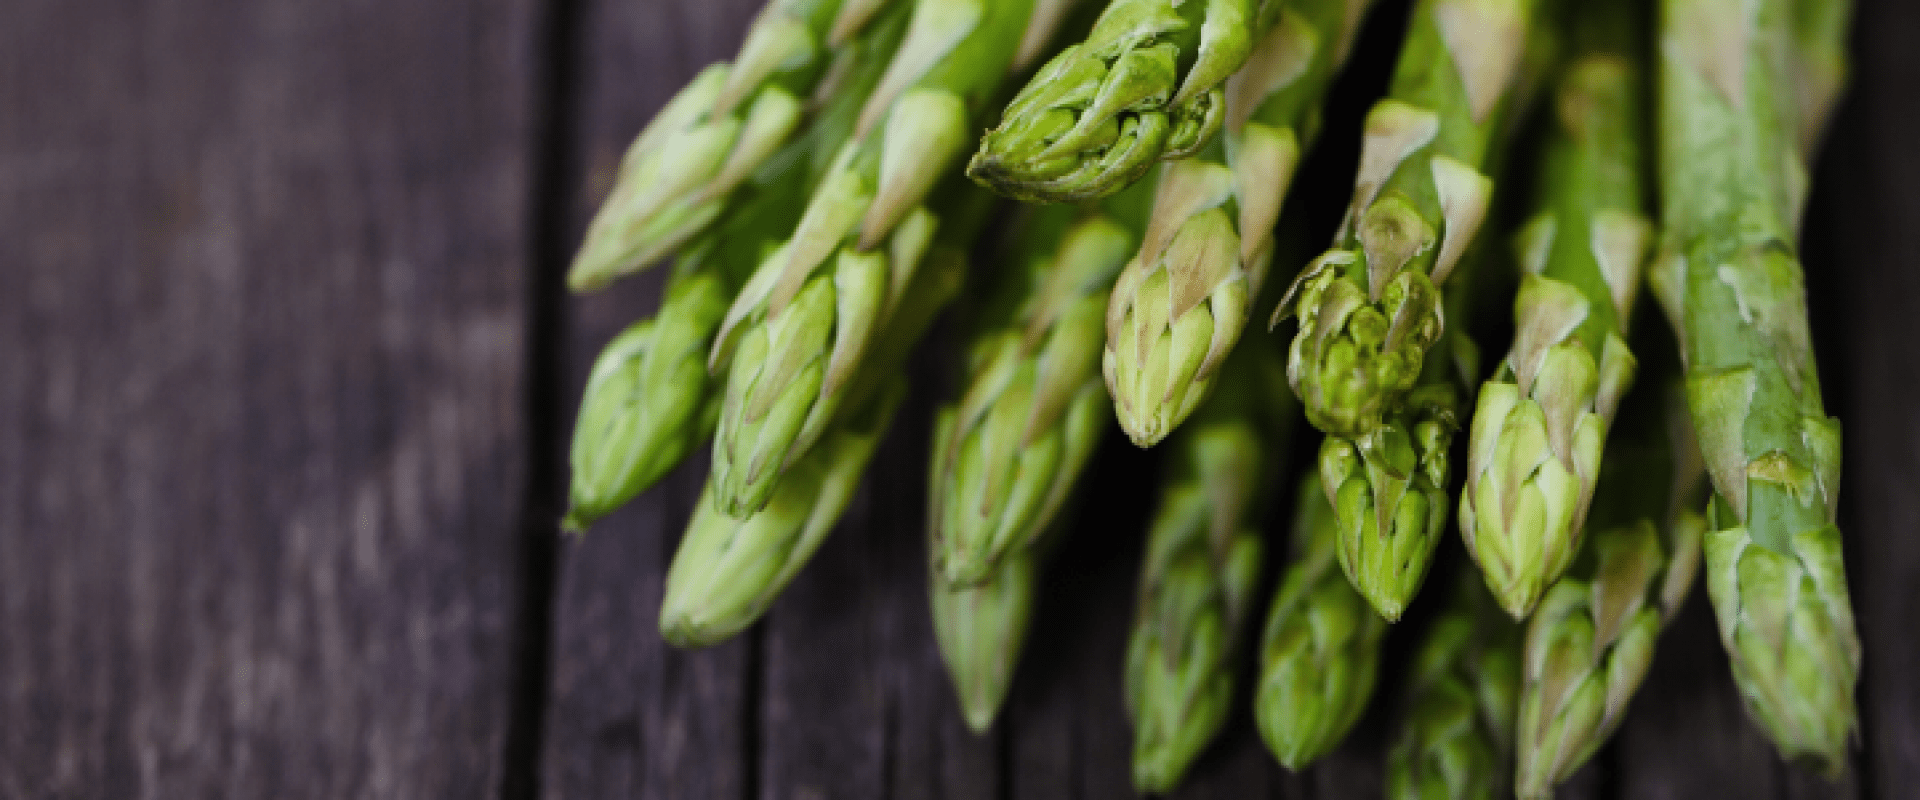 Liebherr - hvordan opbevarer jeg mine asparges korrekt?